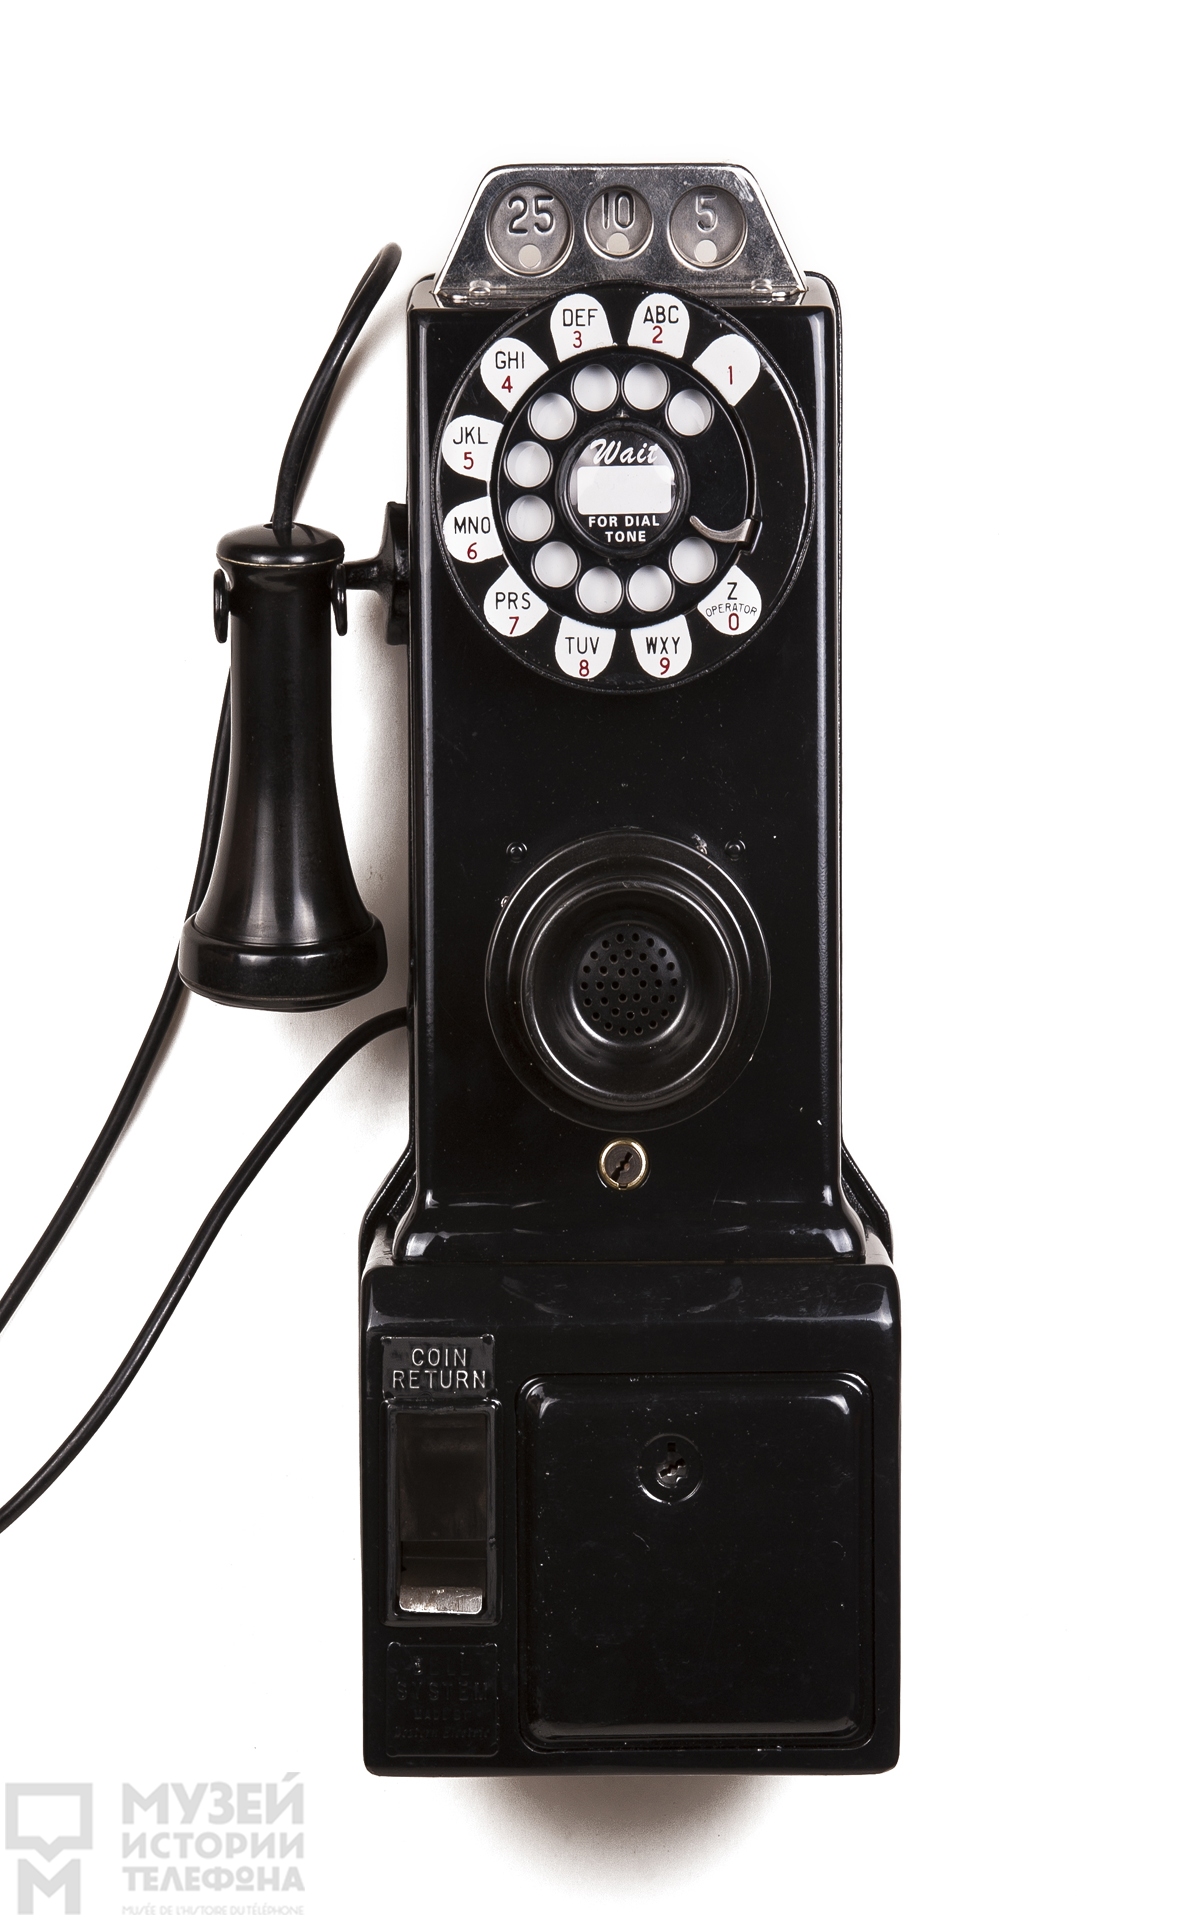 Настенный таксофон системы АТС с наушником в виде трубки Белла, микрофоном и ящиком-монетоприёмником на три вида монет - 25, 10 и 5 центов, модель "Gray telephone station"